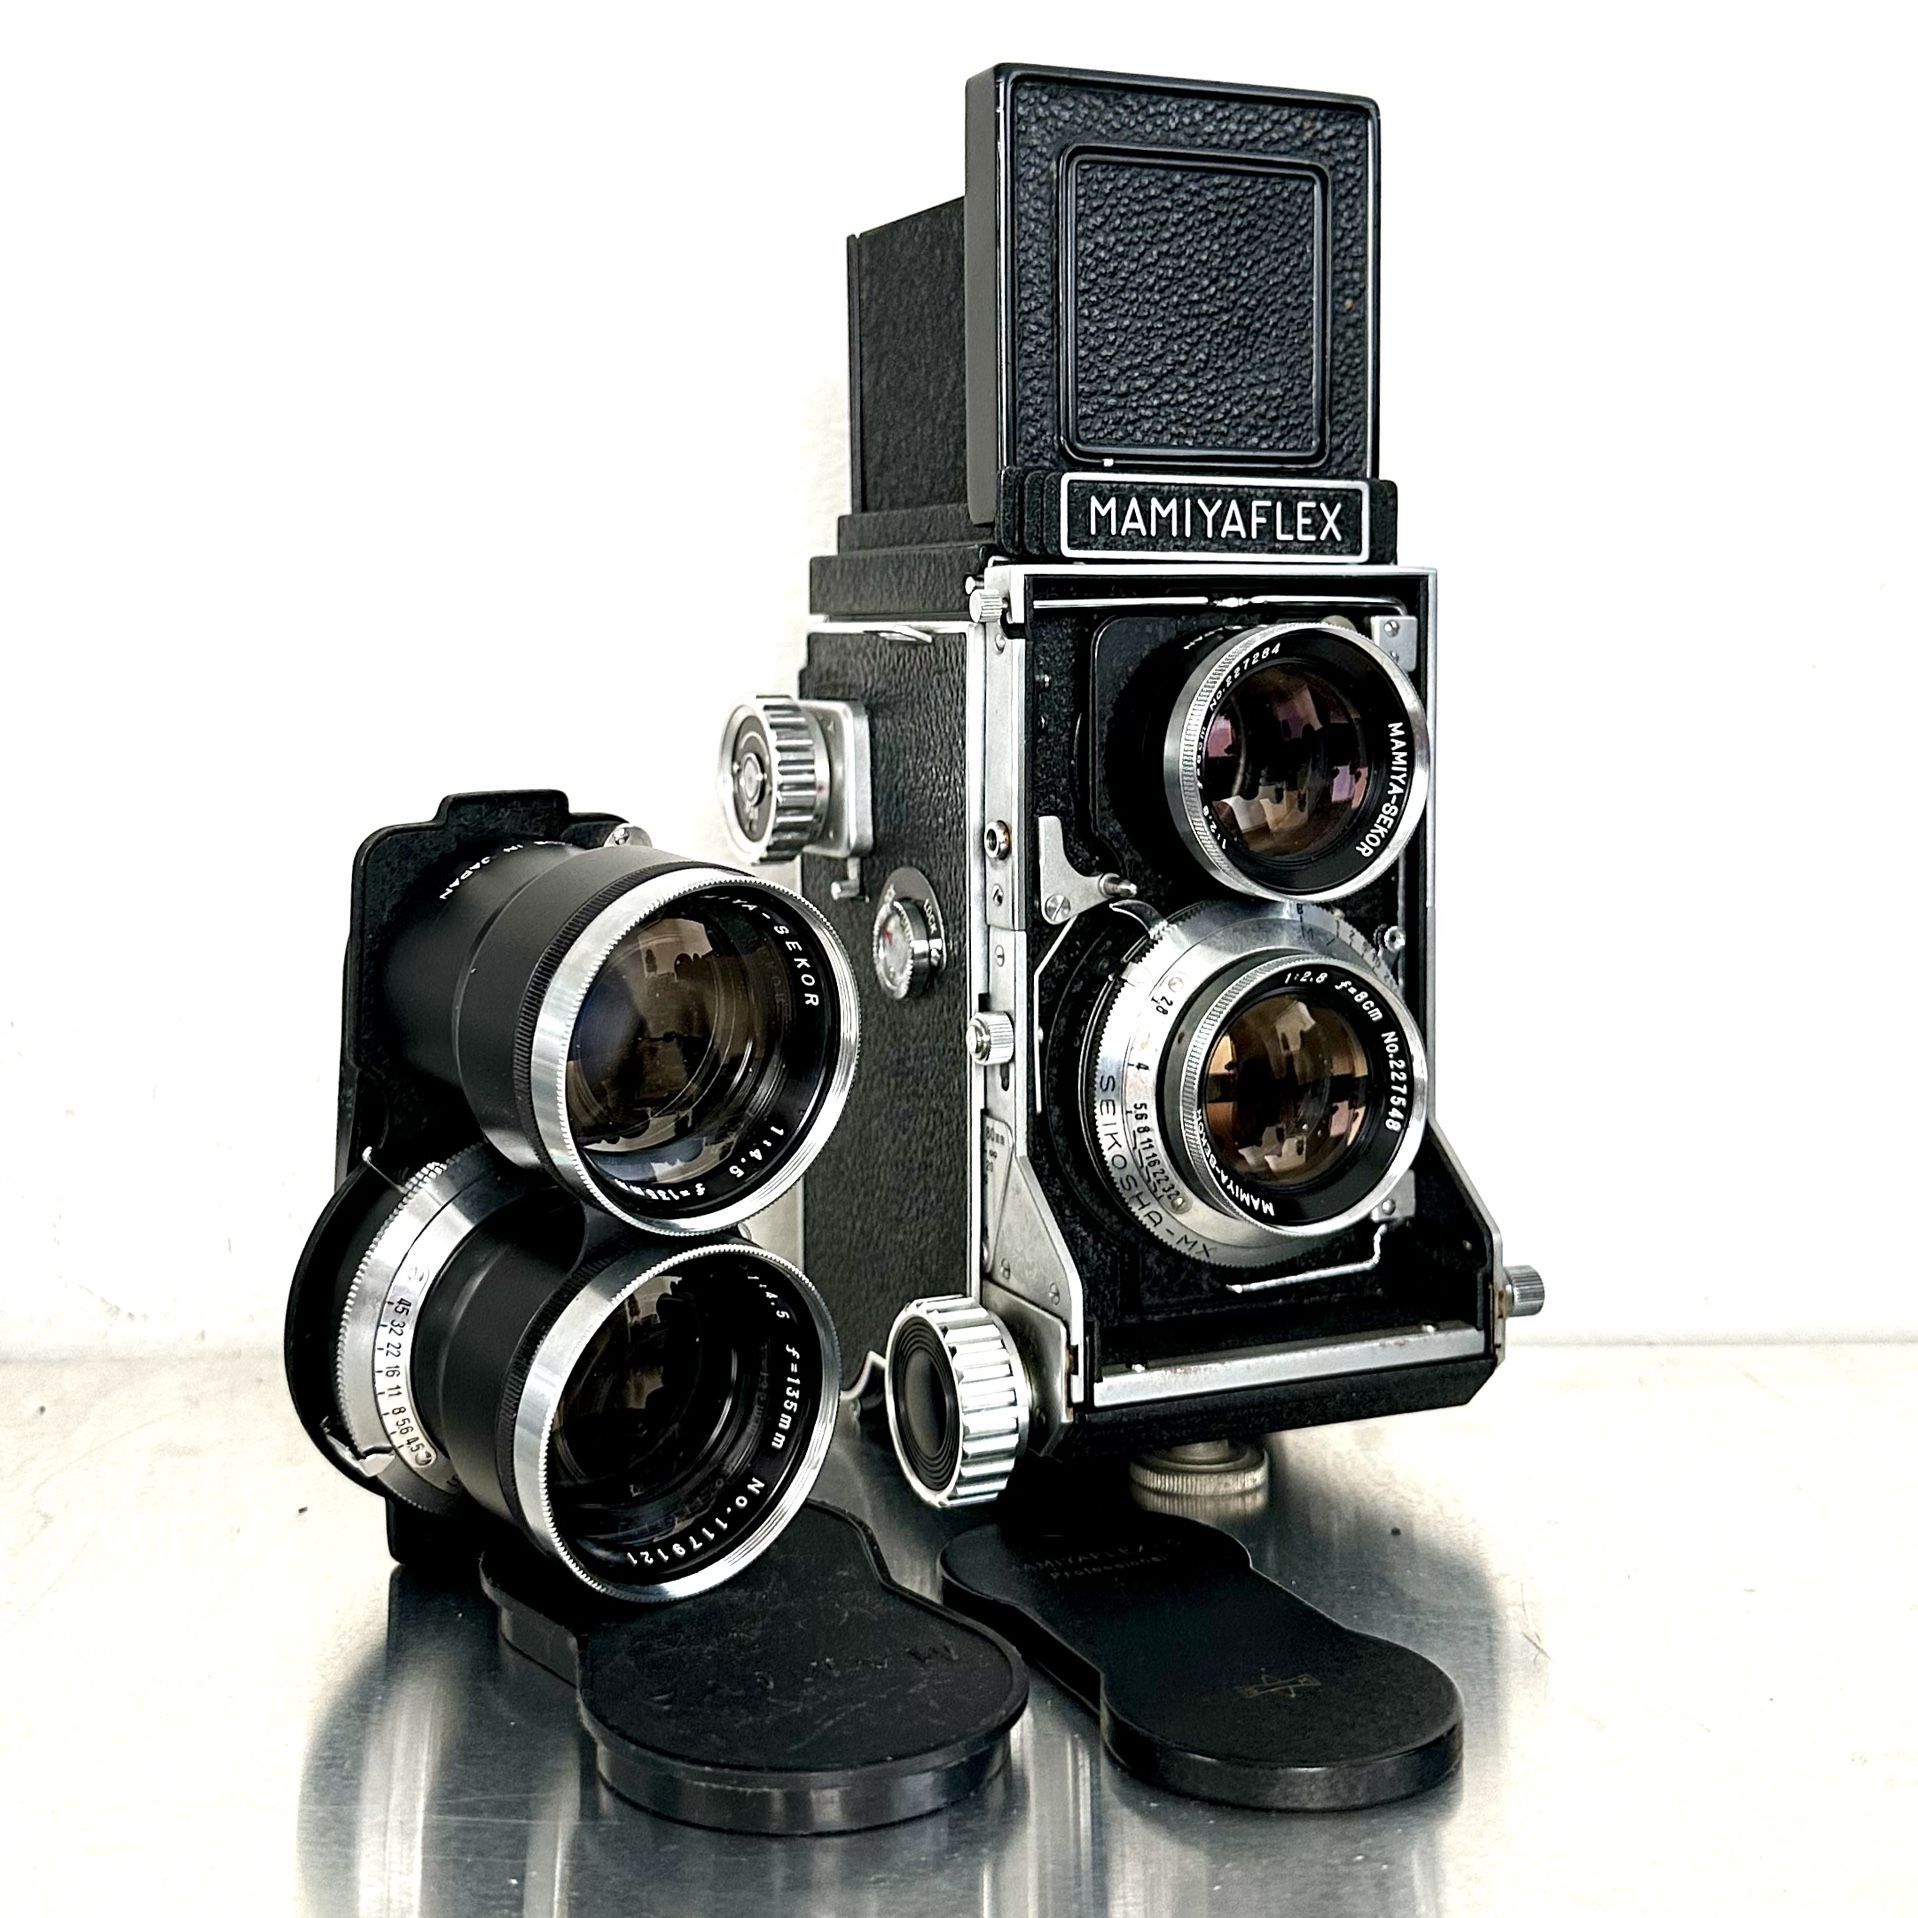 Mamiyaflex C TLR camera + 80/2.8 + 135/4.5 Lens.  80mm 135mm